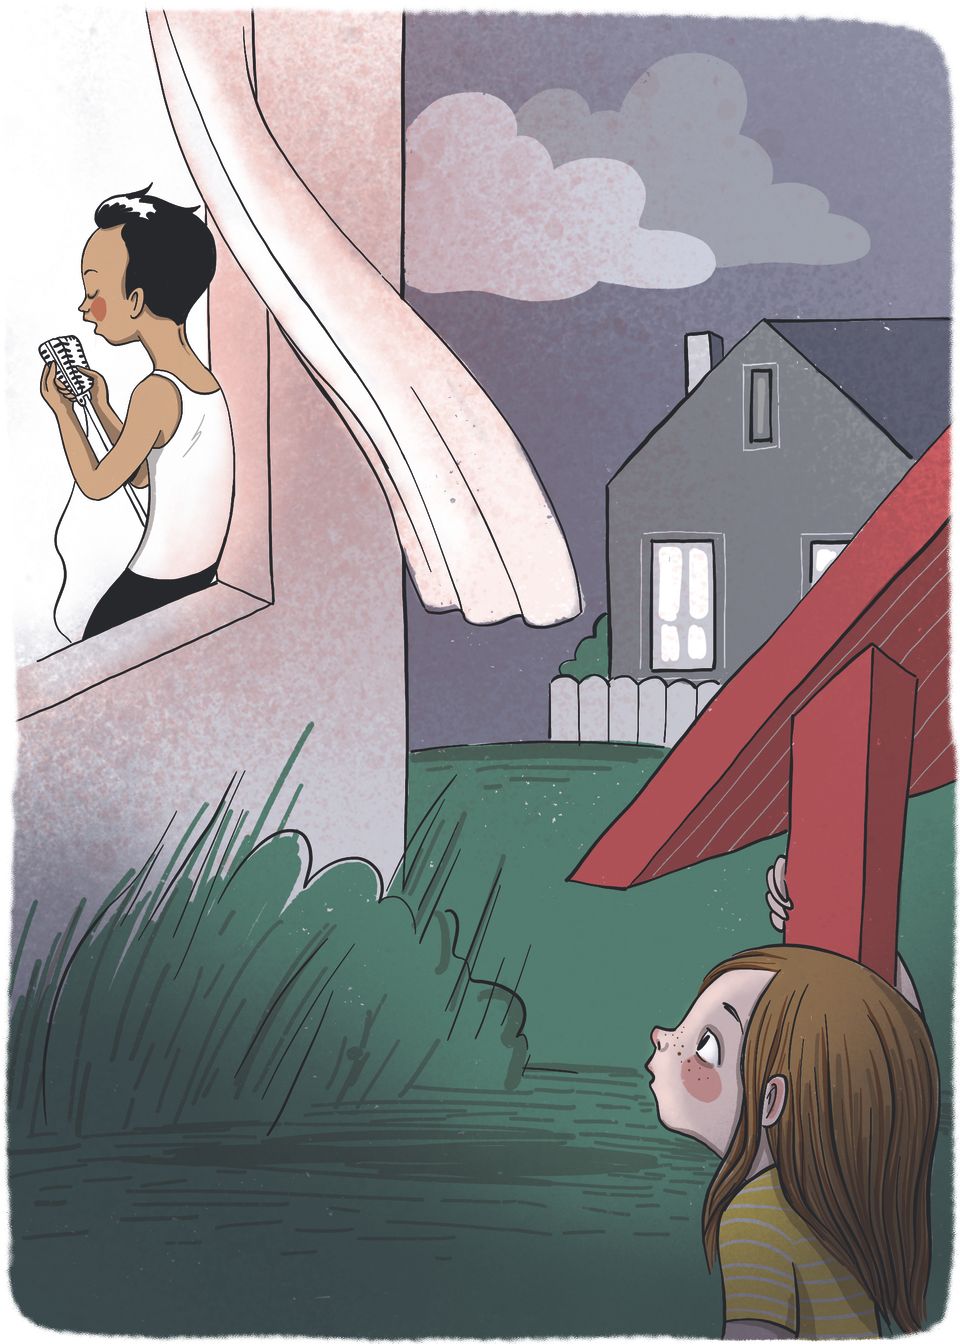 Illustrasjon av en jente med mørkt, langt hår, som kikker opp mot et soveromavindu, der en gutt med svart sleik synger inn i en mikrofon. 